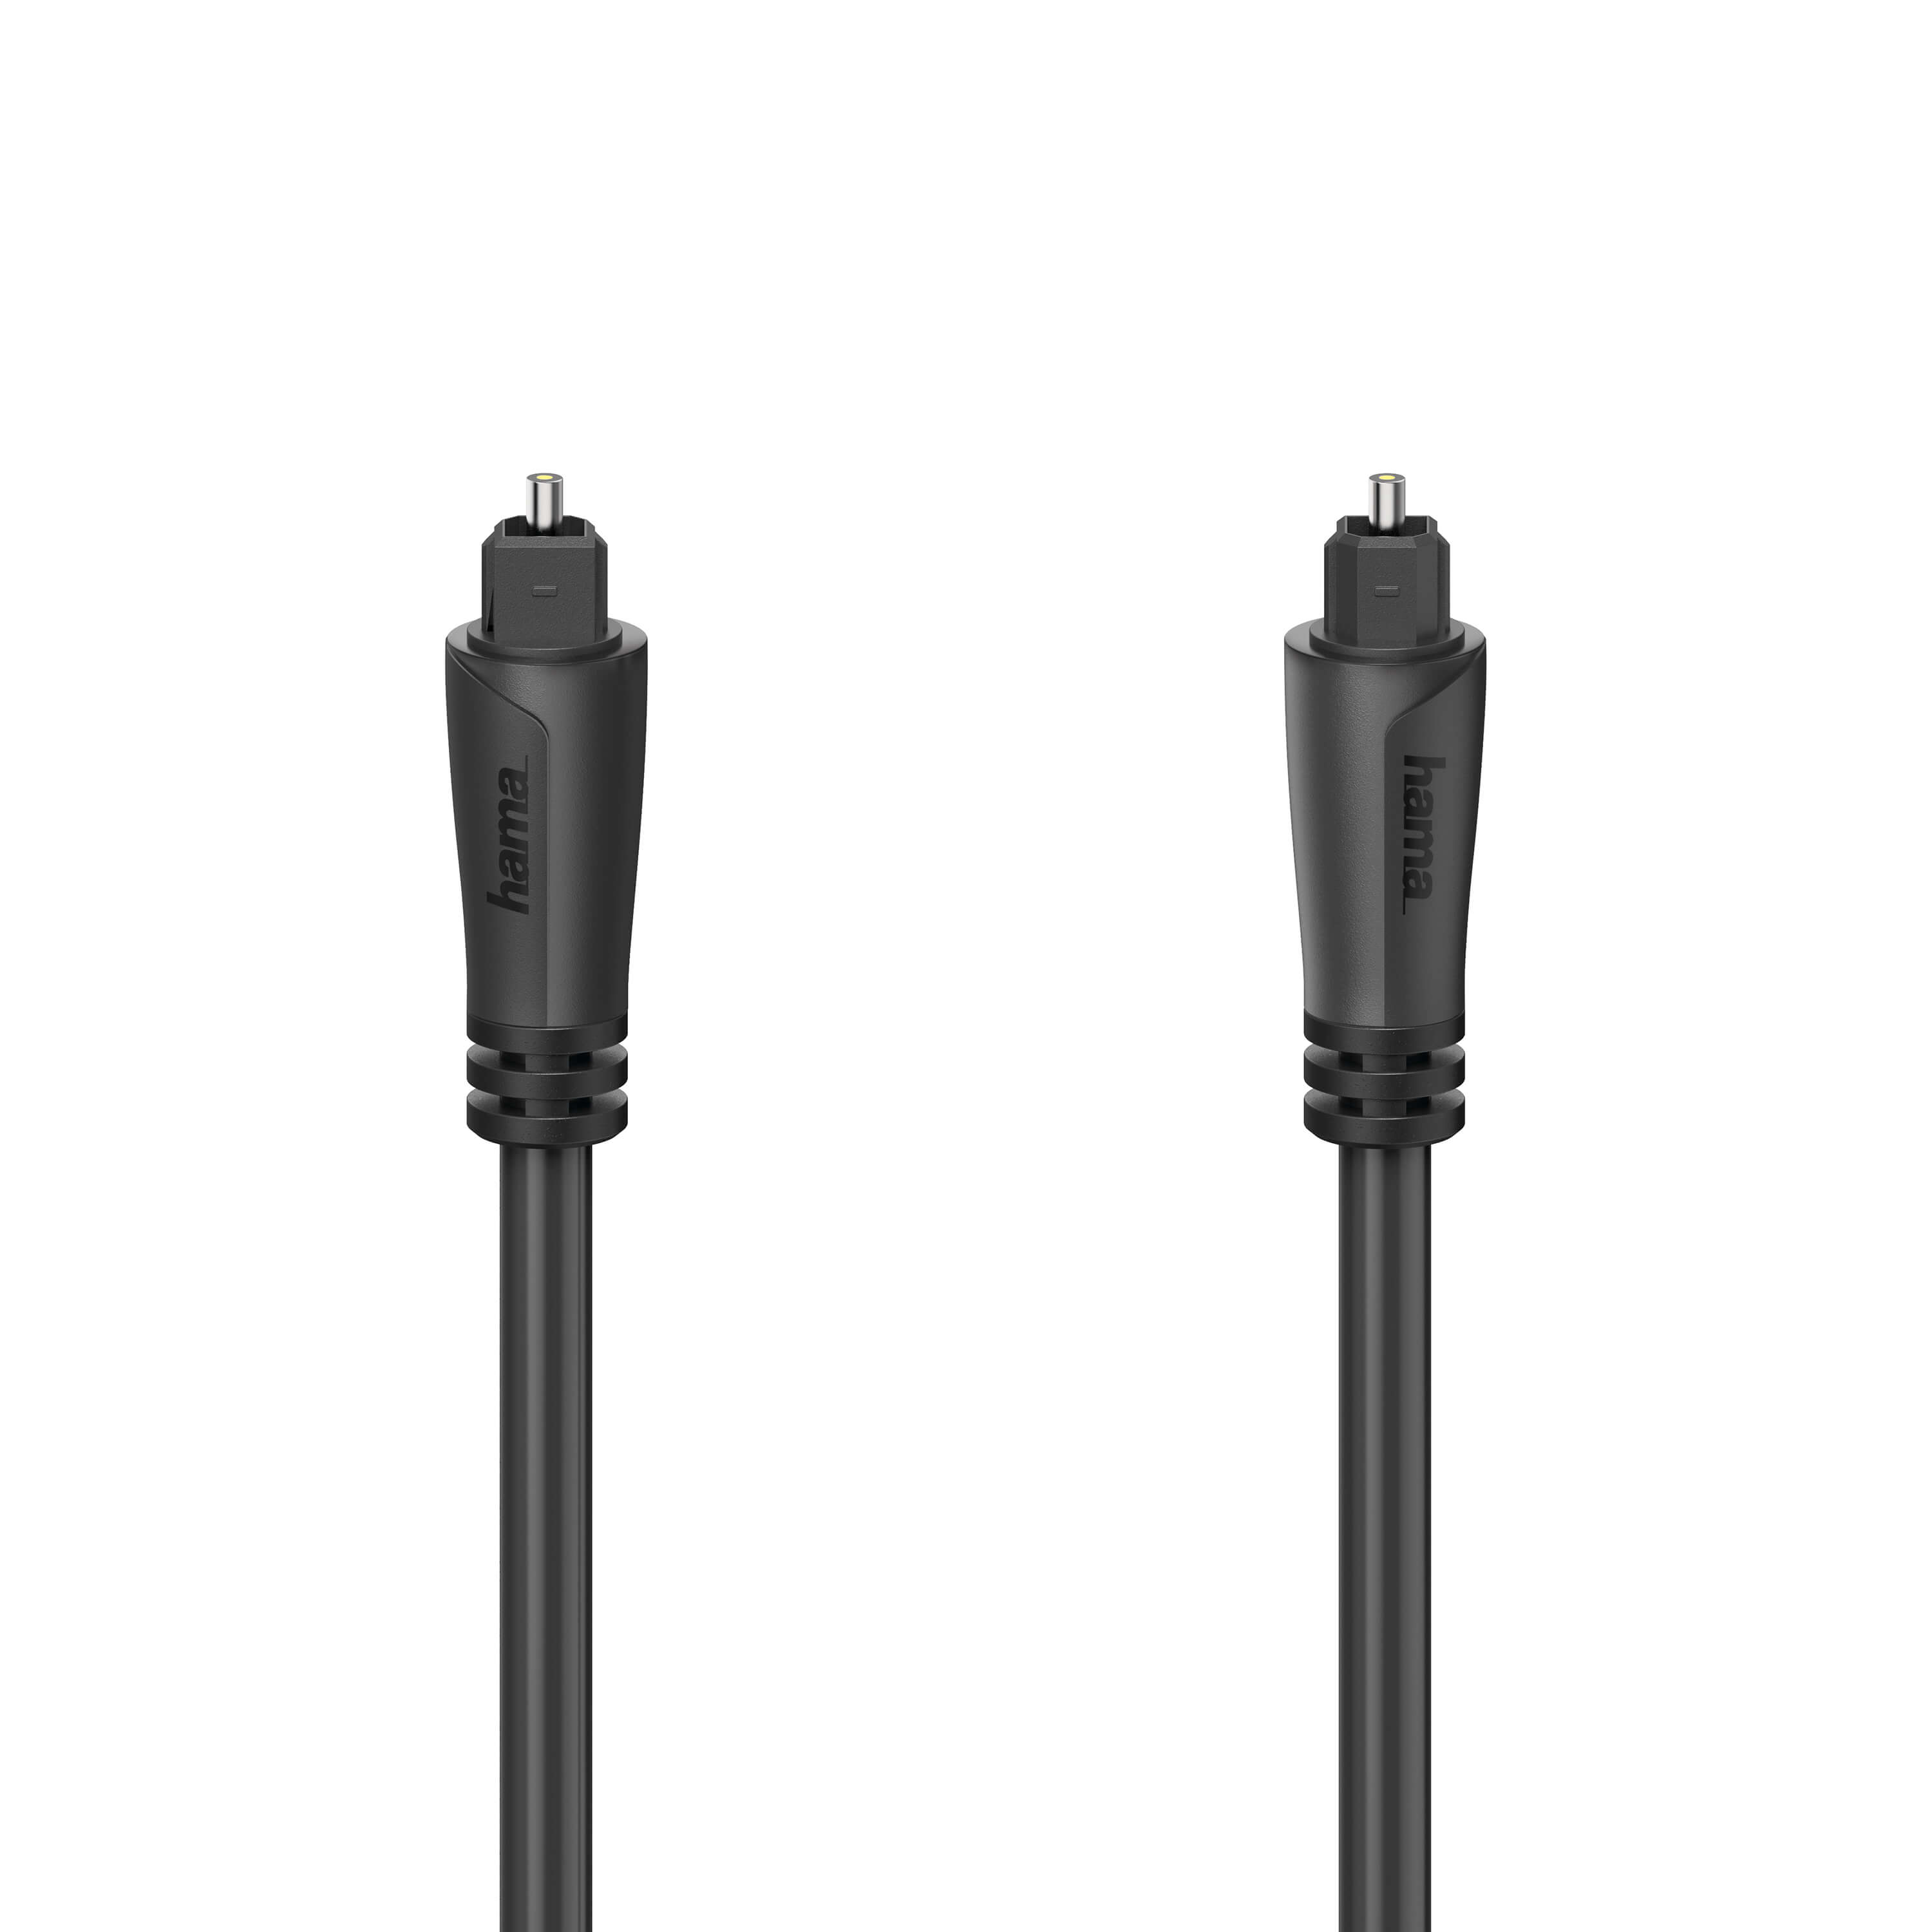 HAMA Audio Optical Fibre Cable, ODT T plug (Toslink), 3m